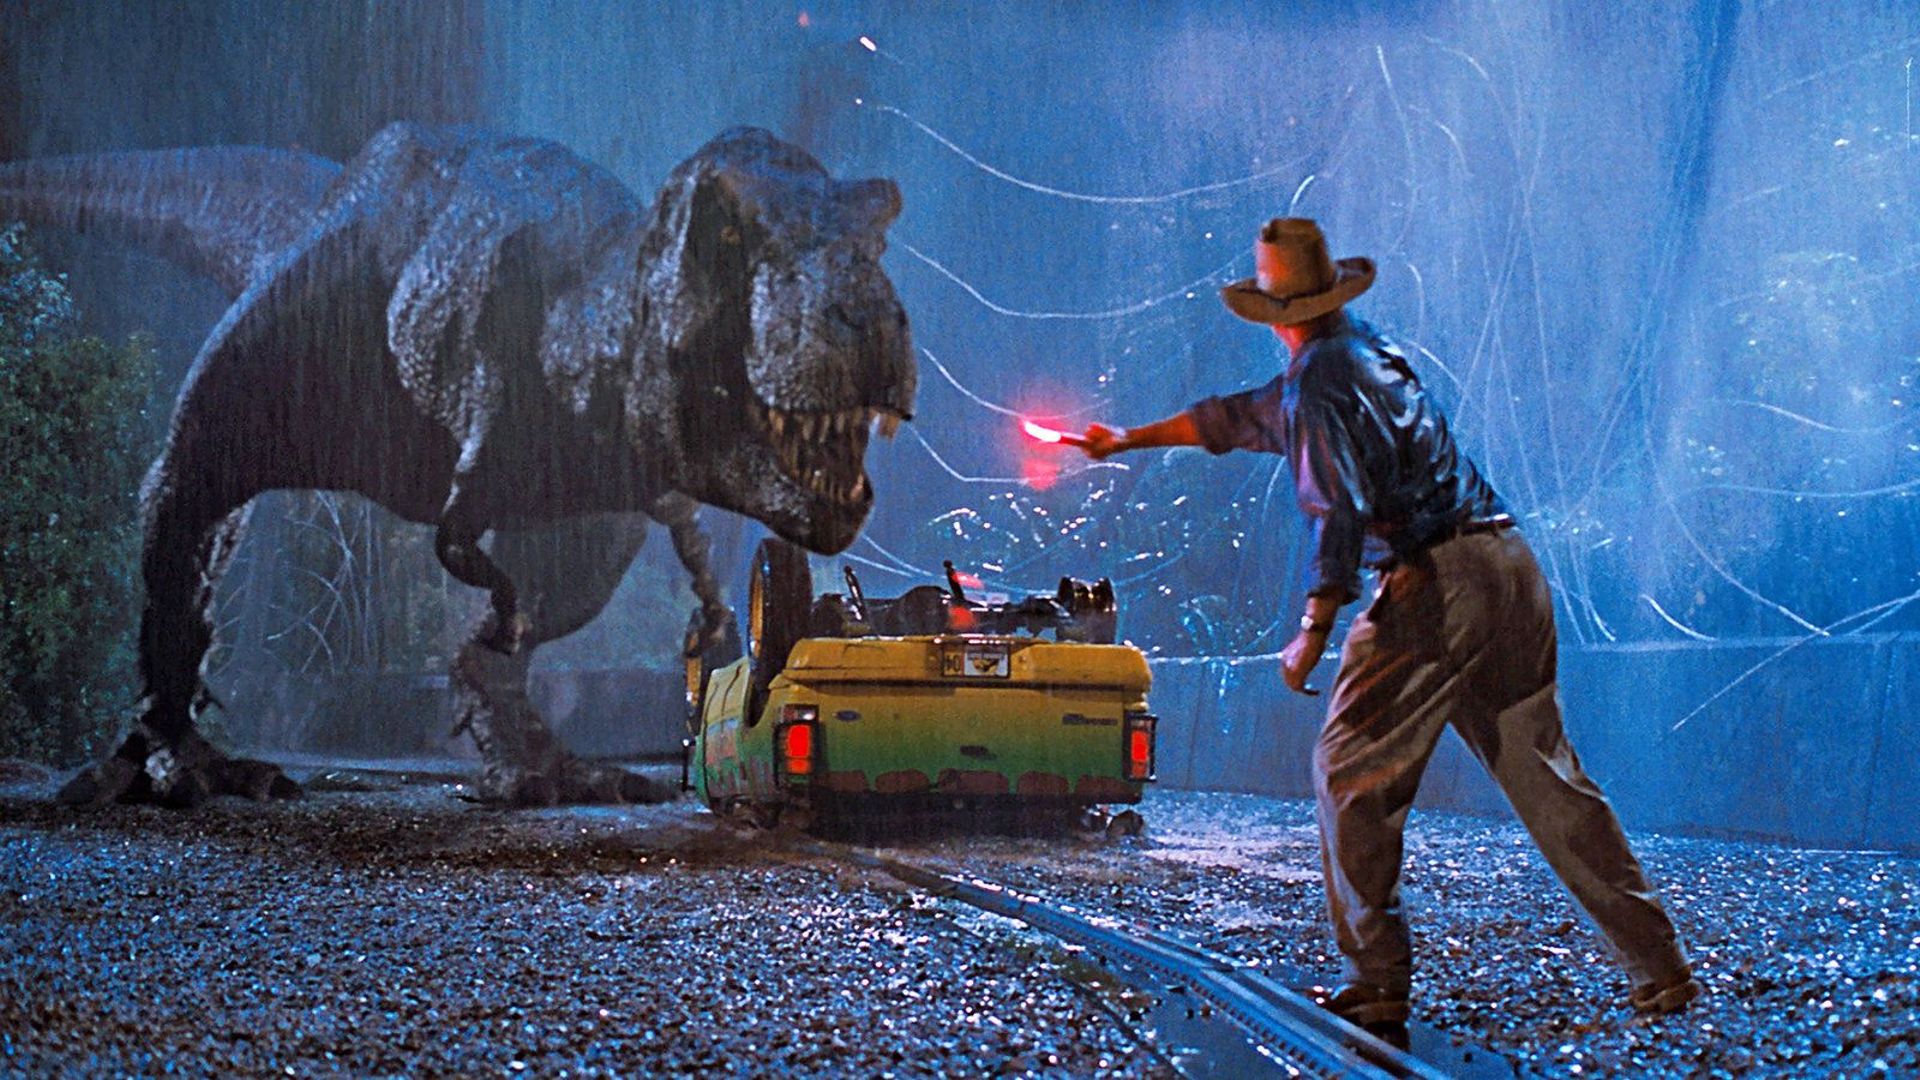 Jouer au torero avec un T-rex, est-ce bien raisonnable ?